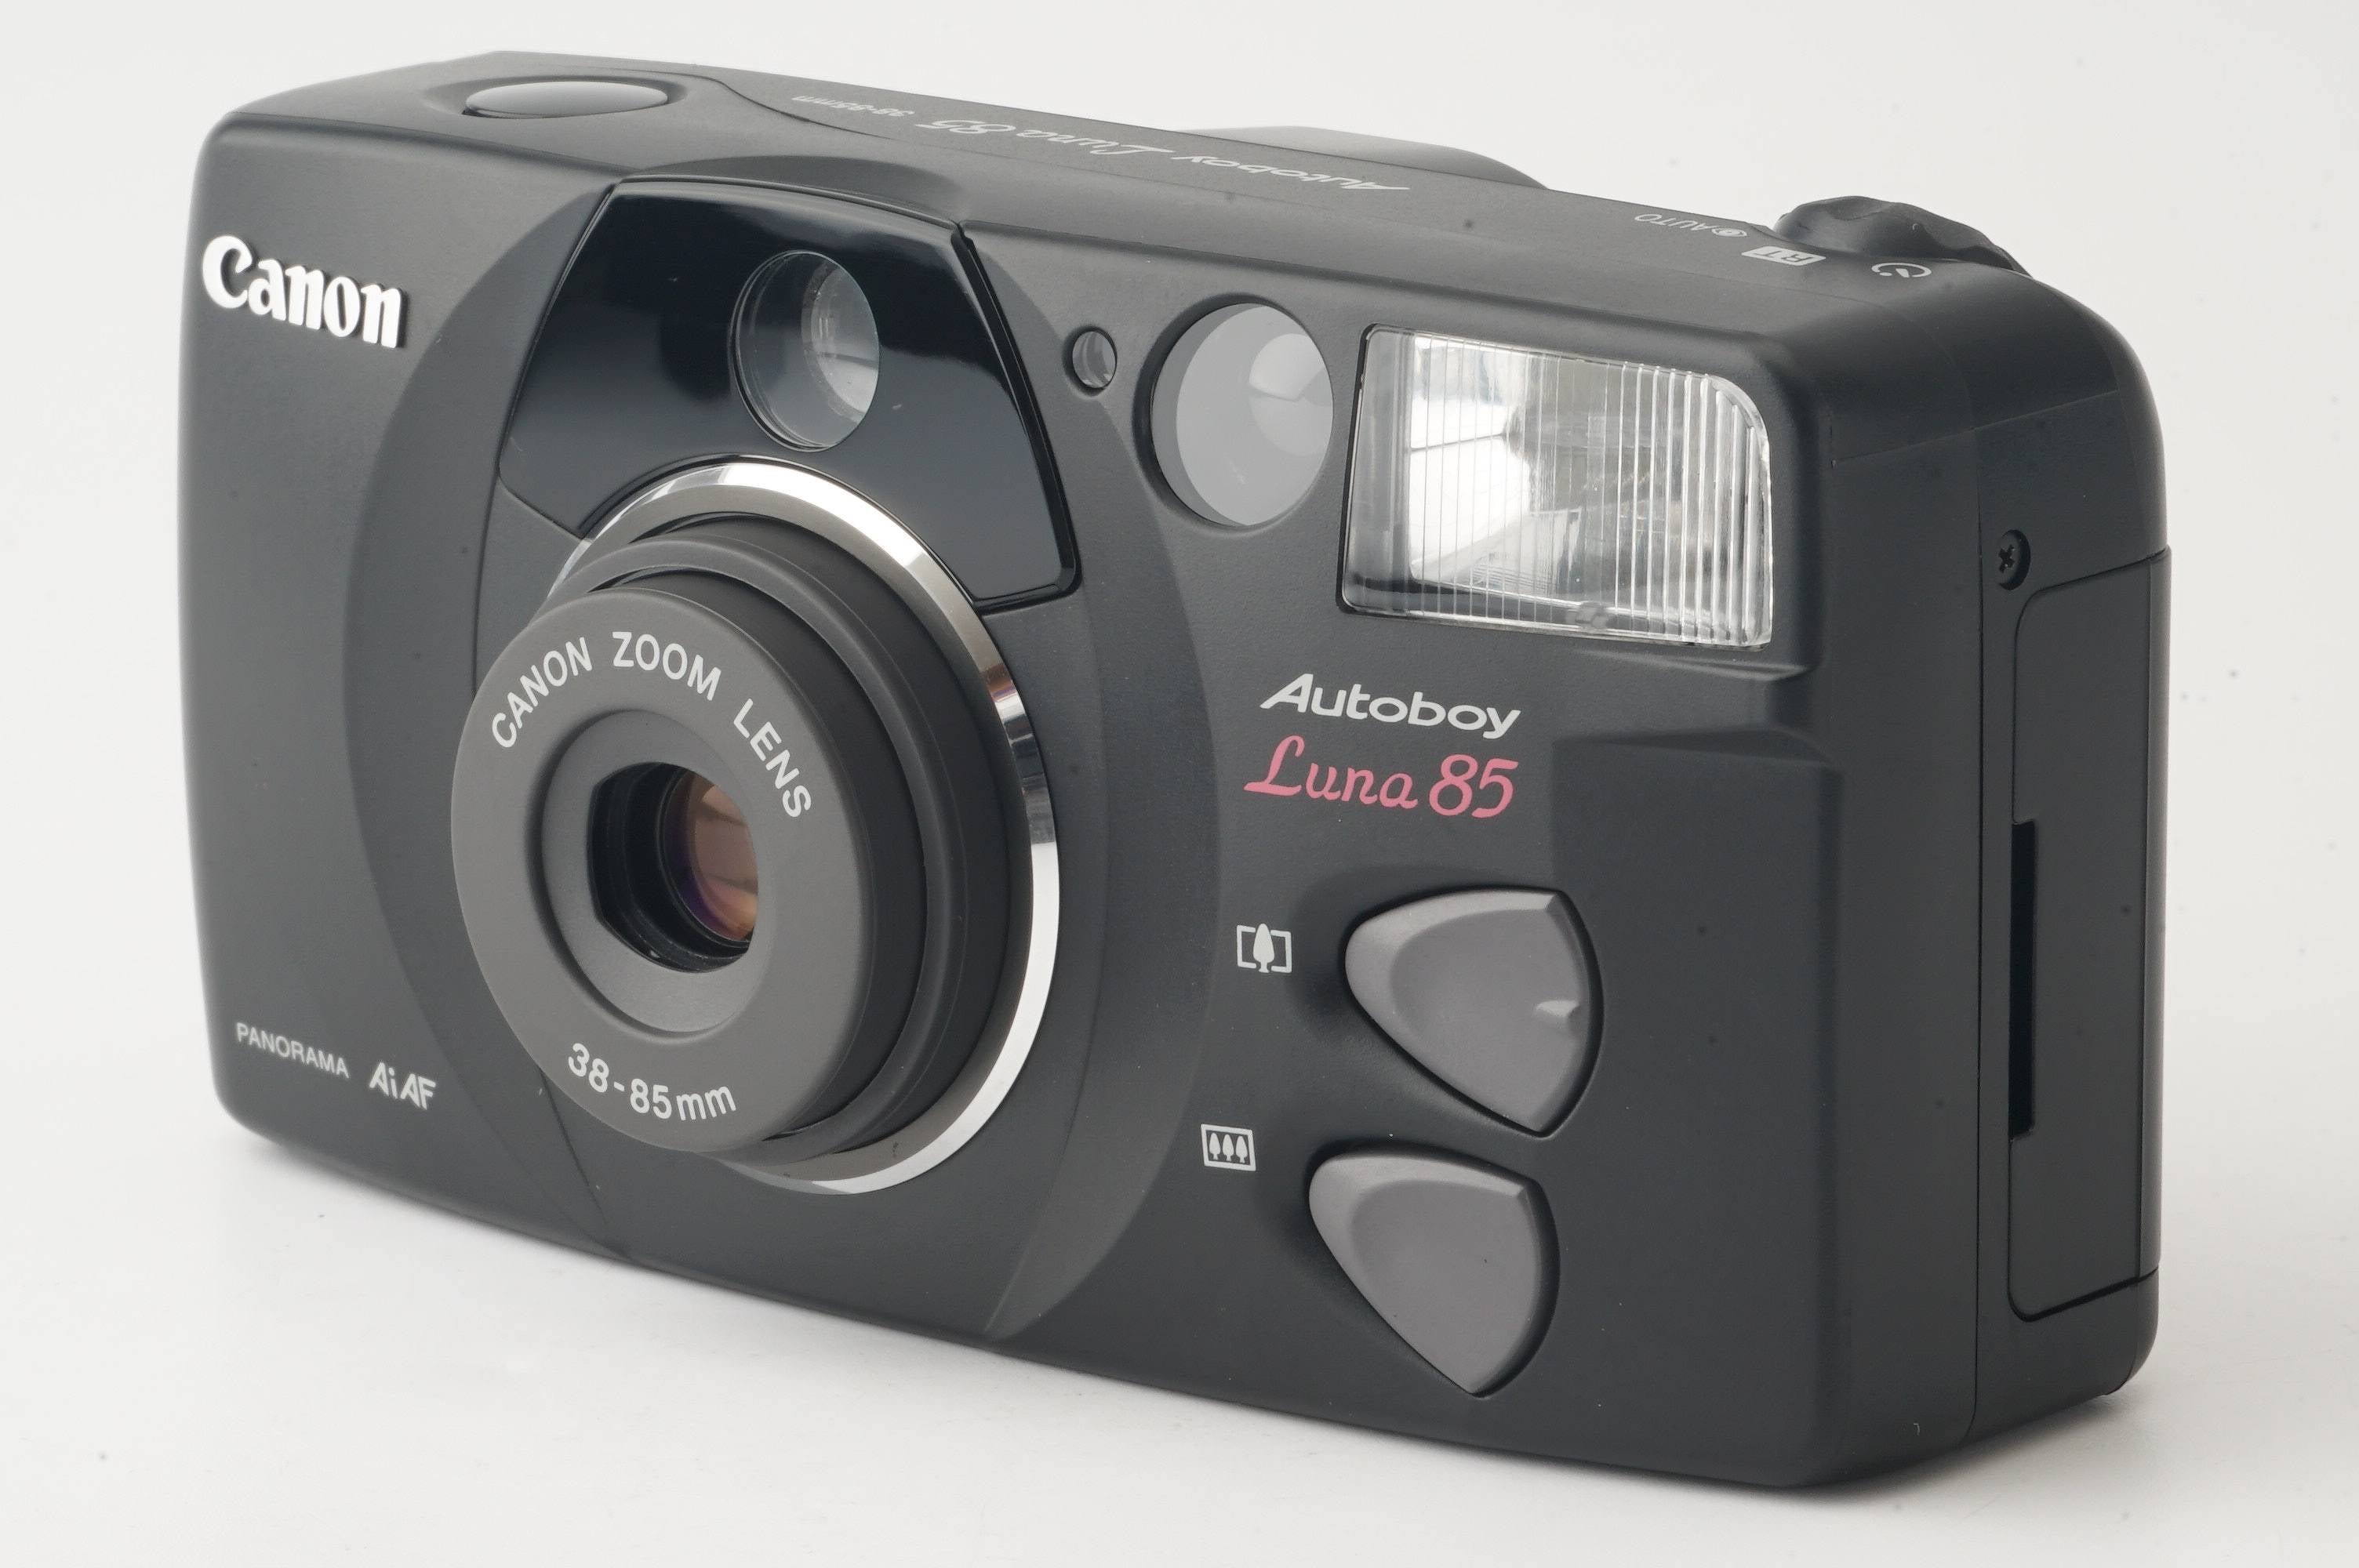 キヤノン Canon Autoboy Luna 85 Black / ZOOM 38-85mm – Natural